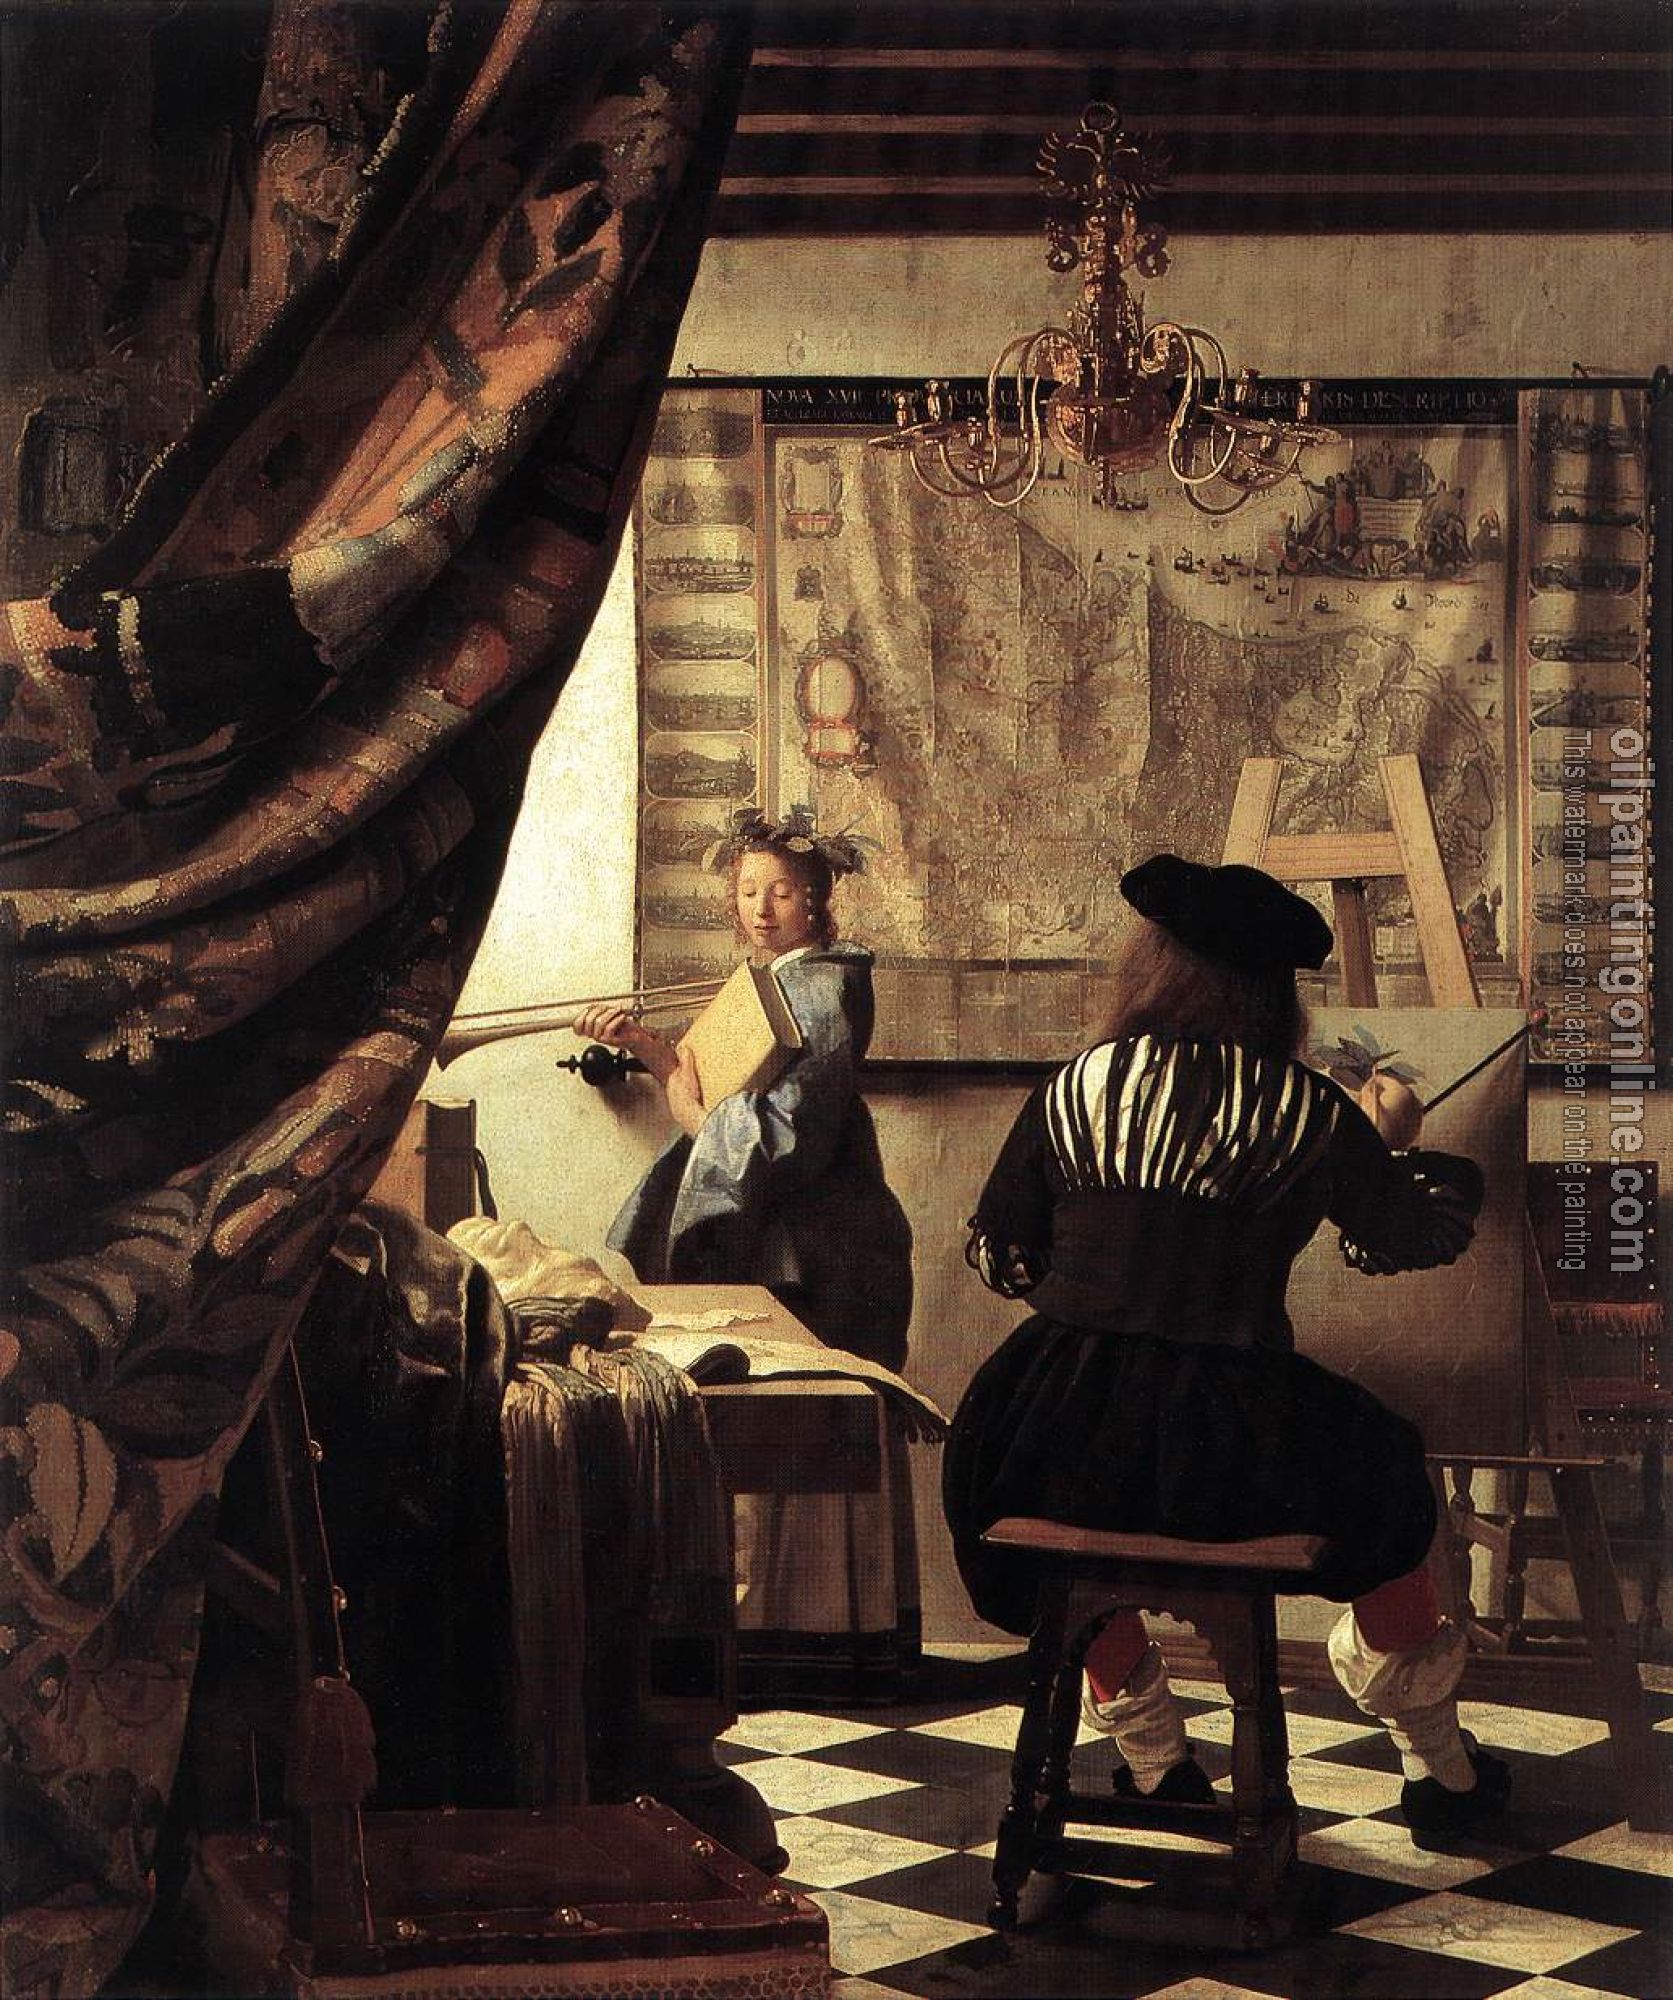 Vermeer, Jan - The Art of Painting